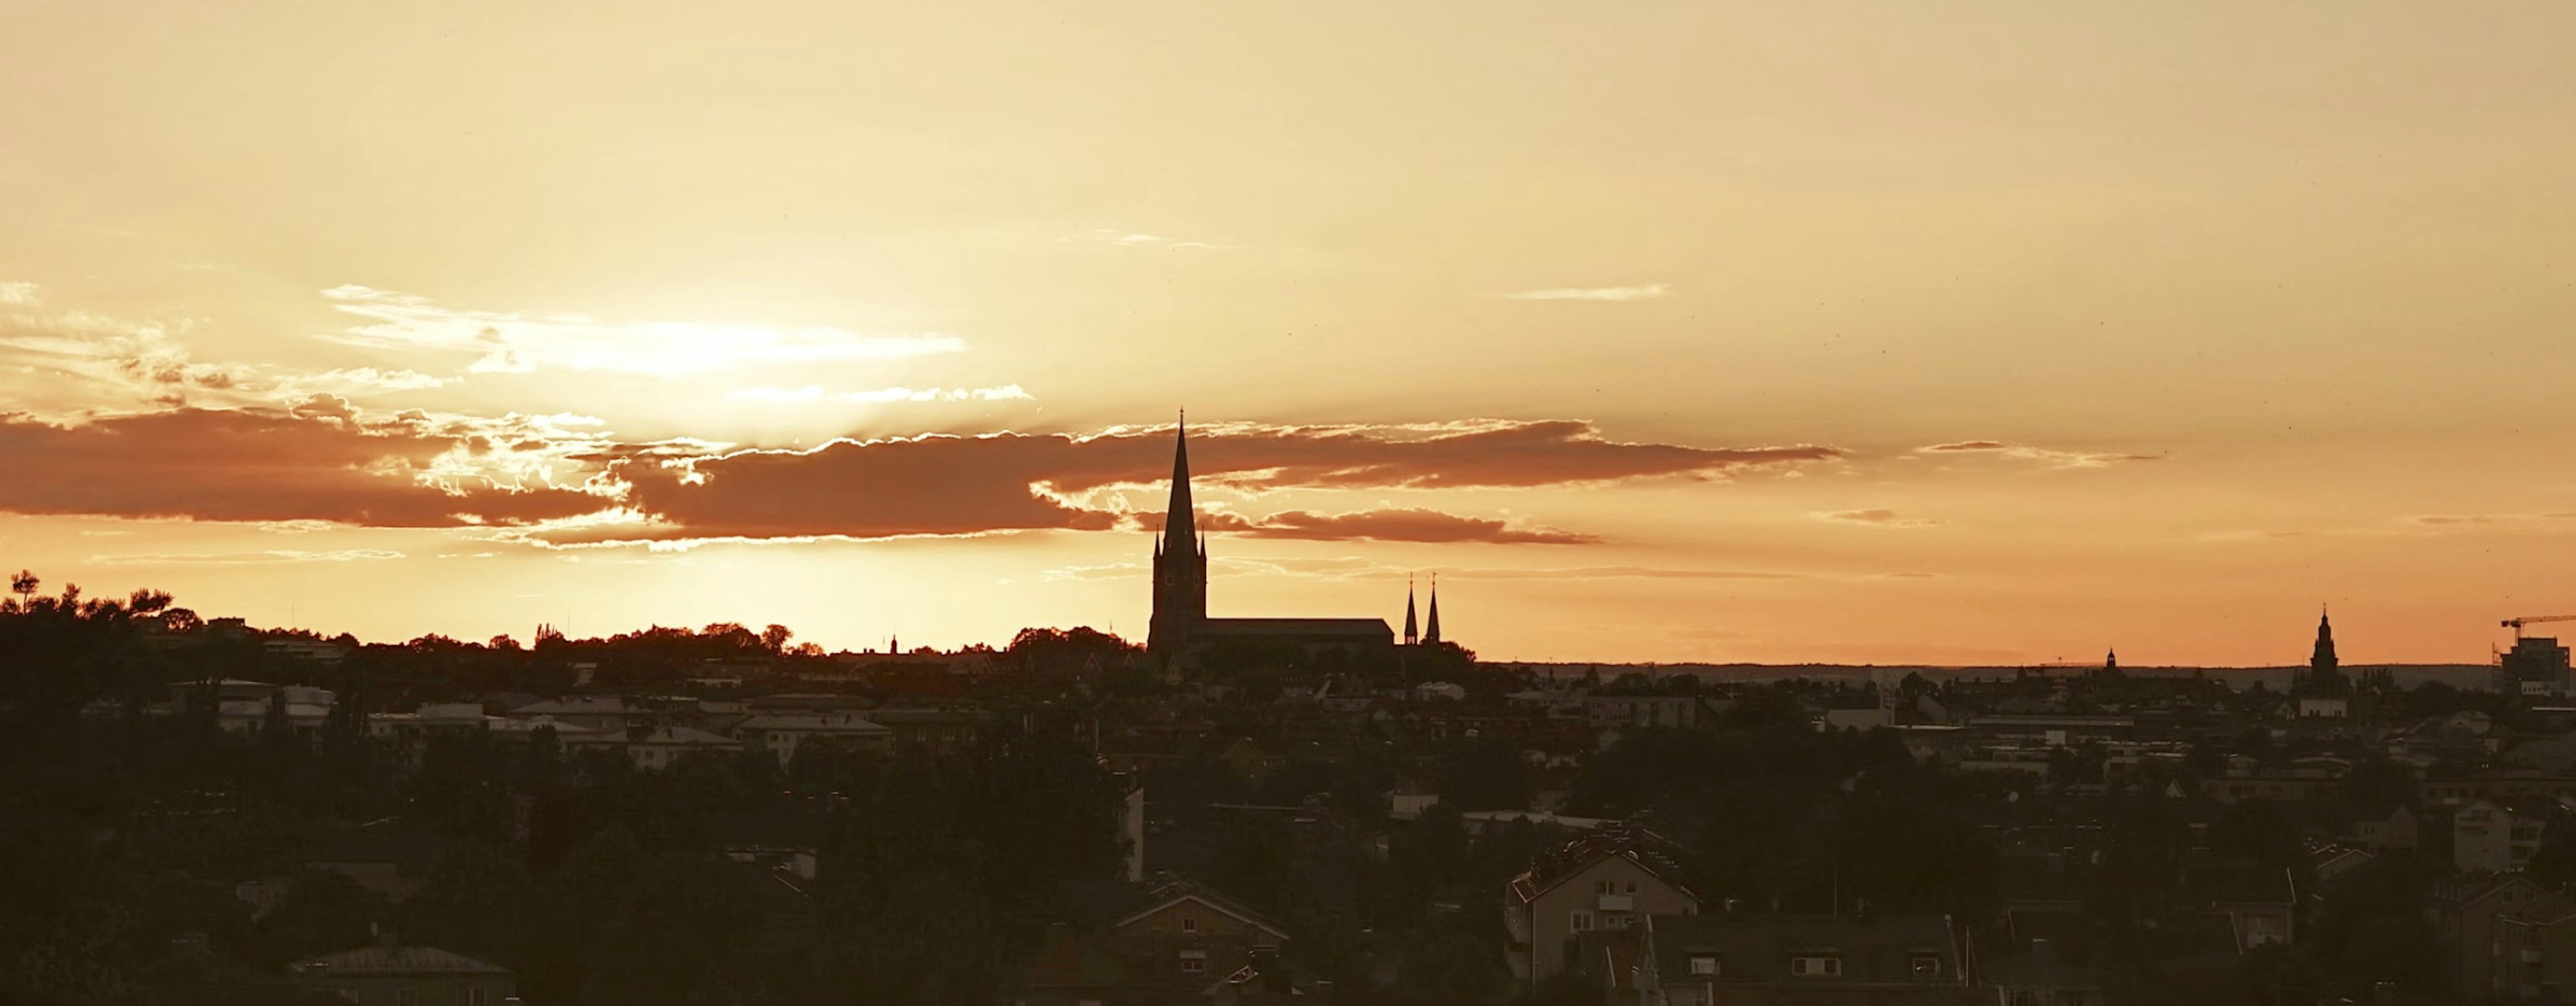 Solnedgång över Linköpings stadssilhuett med dramatisk himmel och kyrkans torn som utmärker sig mot horisonten